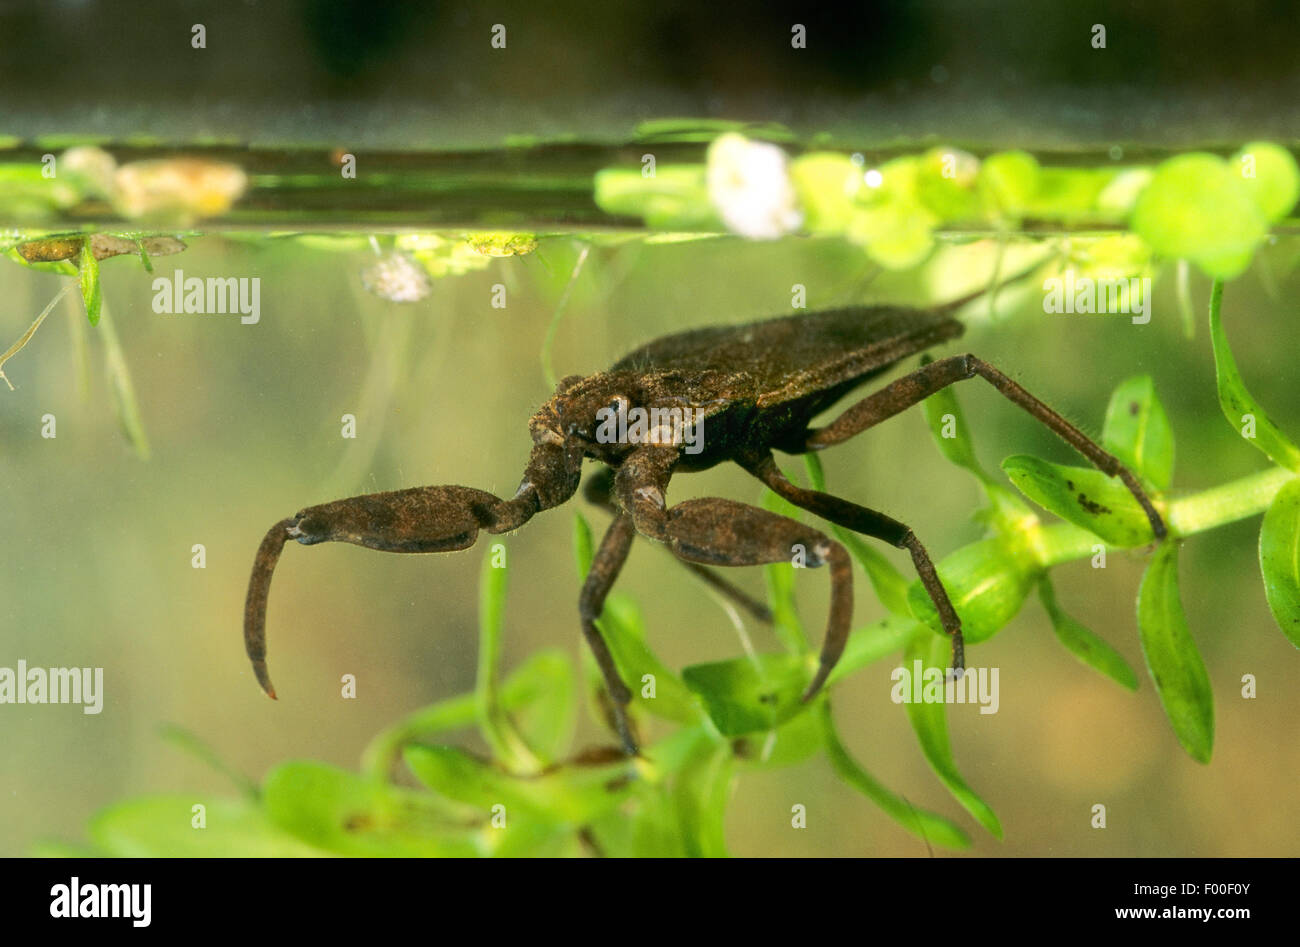 water scorpion (Nepa cinerea, Nepa rubra), lurking for prey under water, Germany Stock Photo